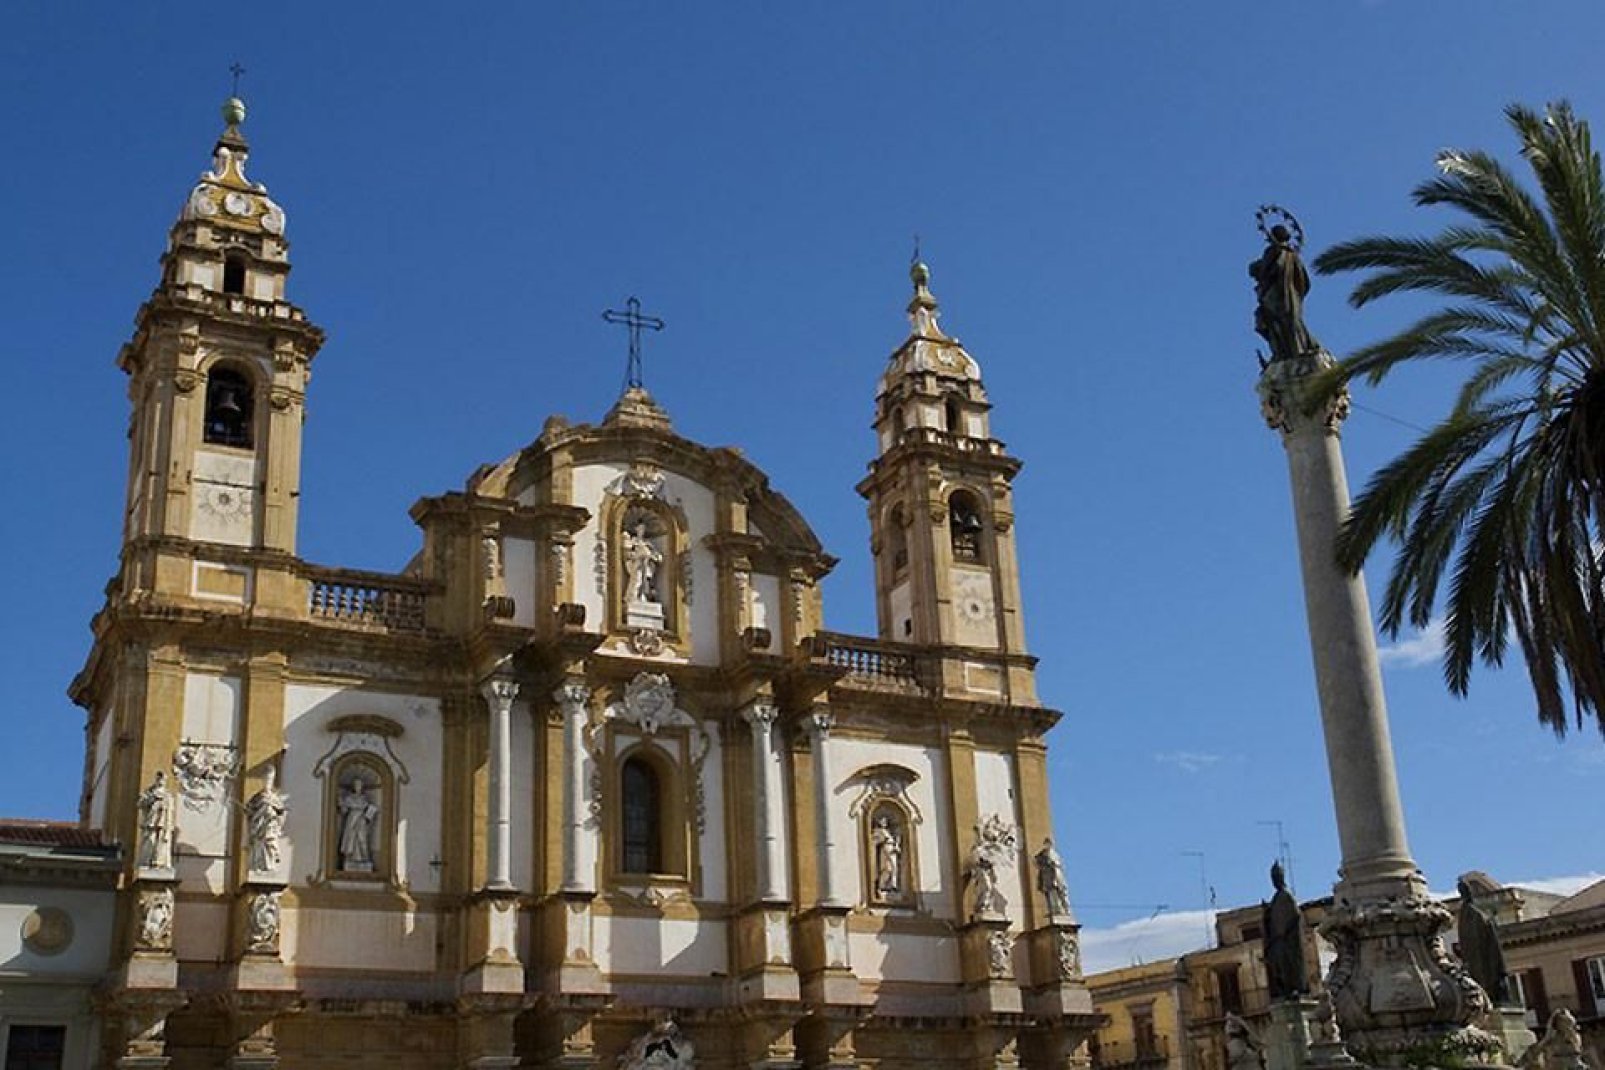 Die Kirche San Domenico befindet sich auf dem gleichnamigen Platz im Viertel La Loggia. Hierbei handelt es sich gleich nach der Kathedrale um die zweitwichtigste Kultstätte Palermos.